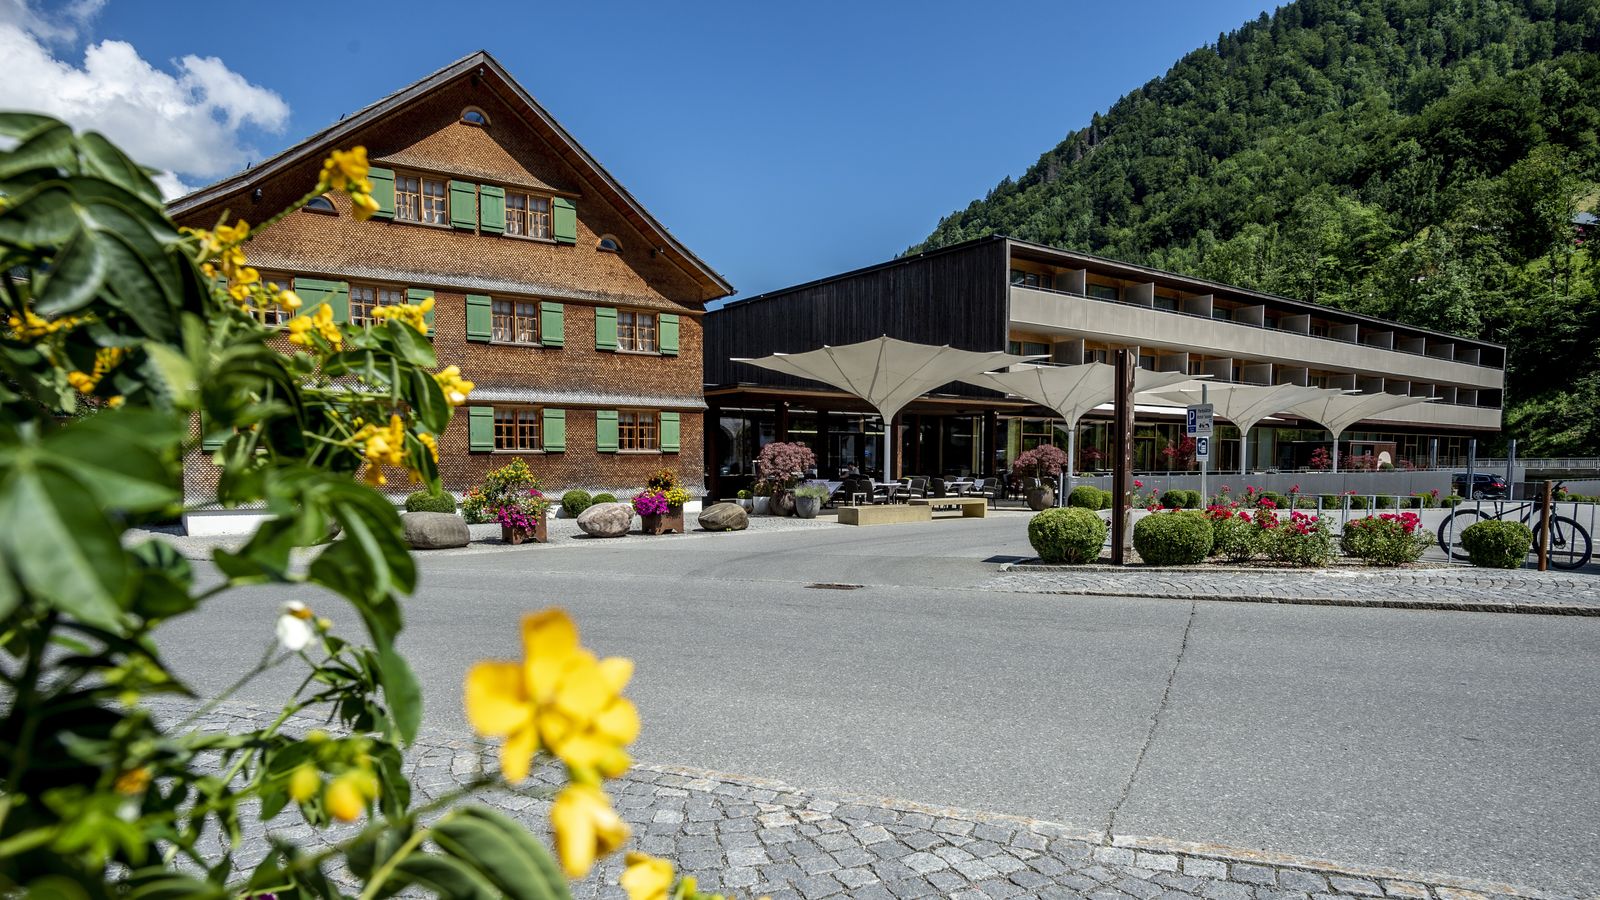 https://youtu.be/IJs3Rn_qg_0 - Sonne Lifestyle Resort Bregenzerwald